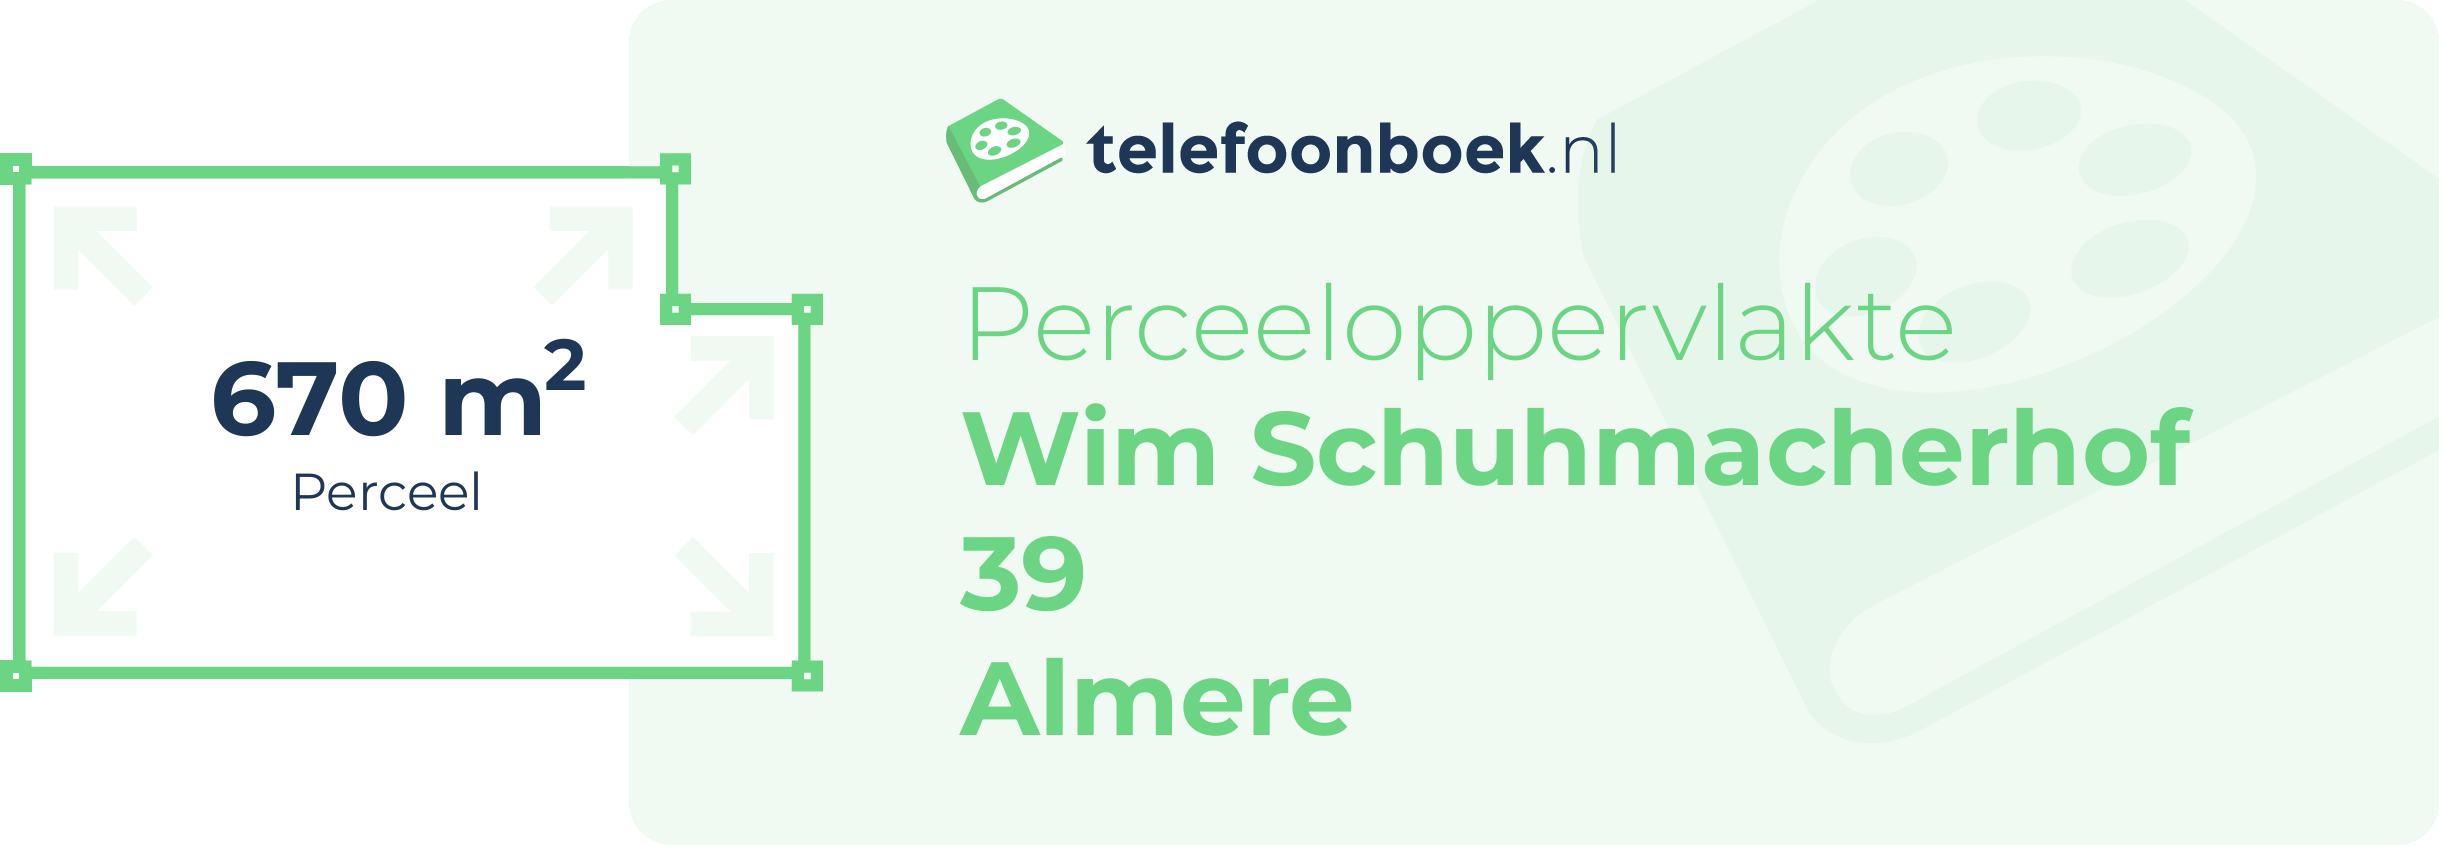 Perceeloppervlakte Wim Schuhmacherhof 39 Almere